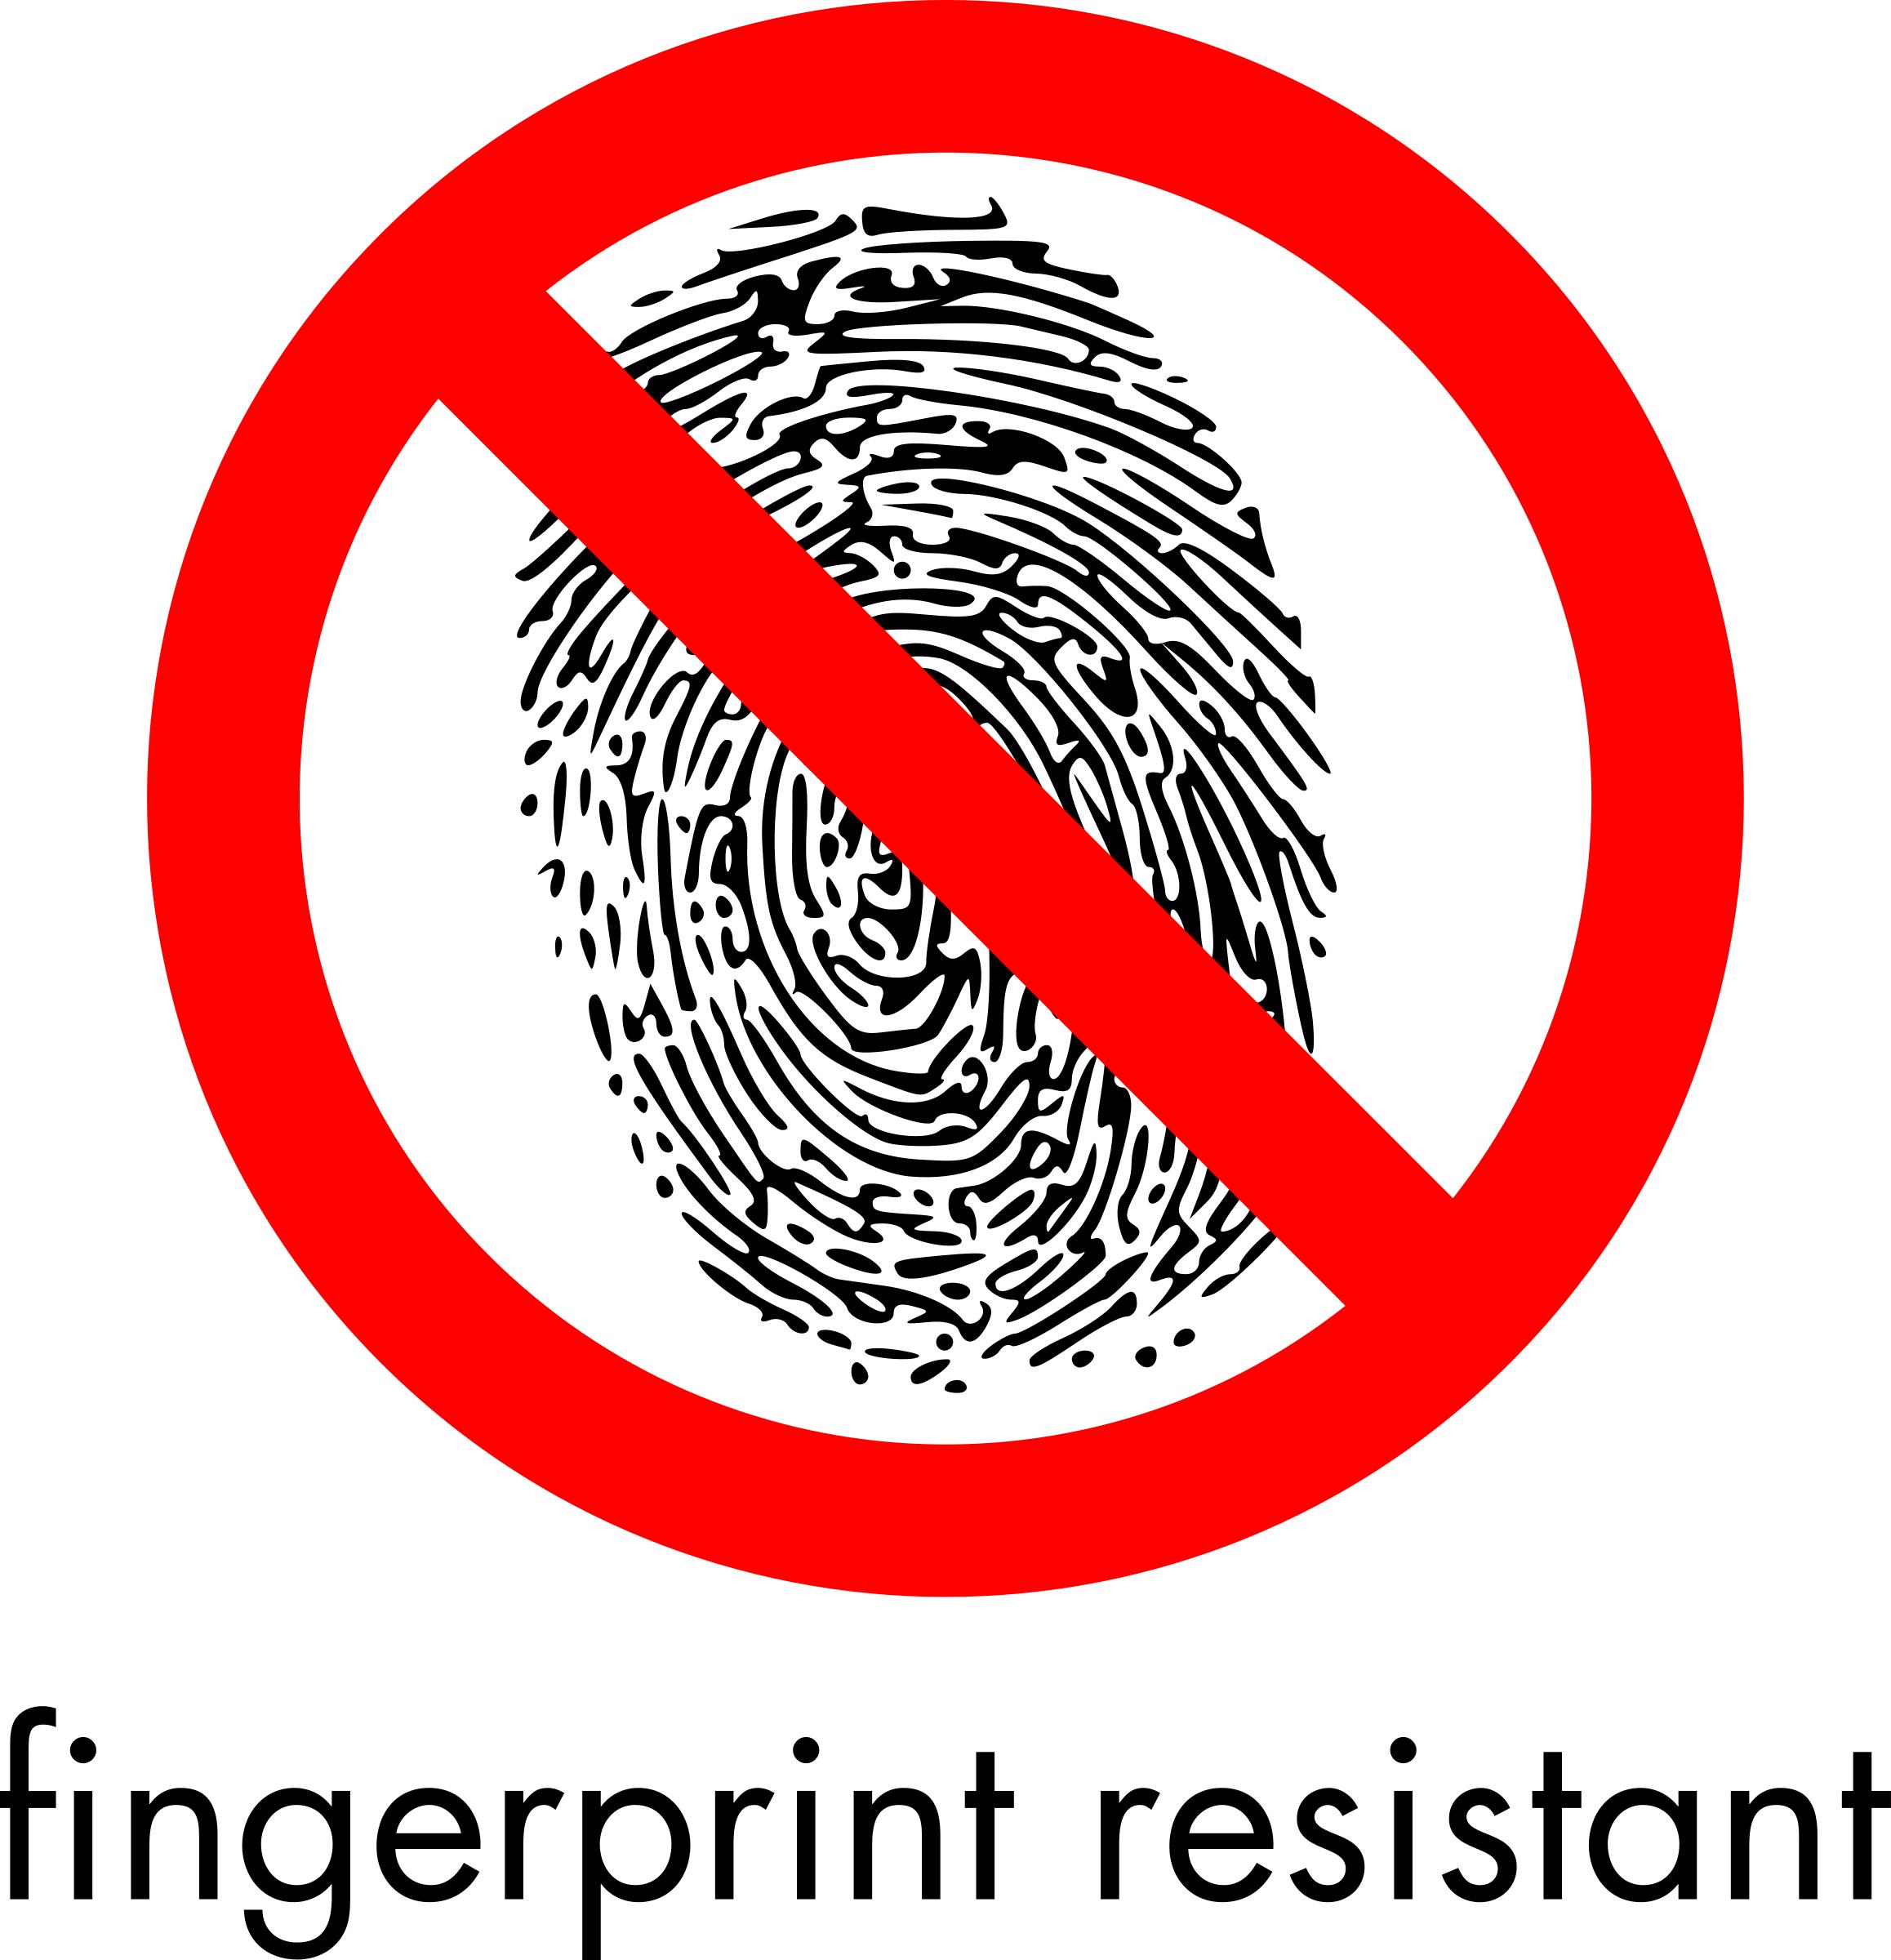 Fingerprint resistant sign (2-color) png